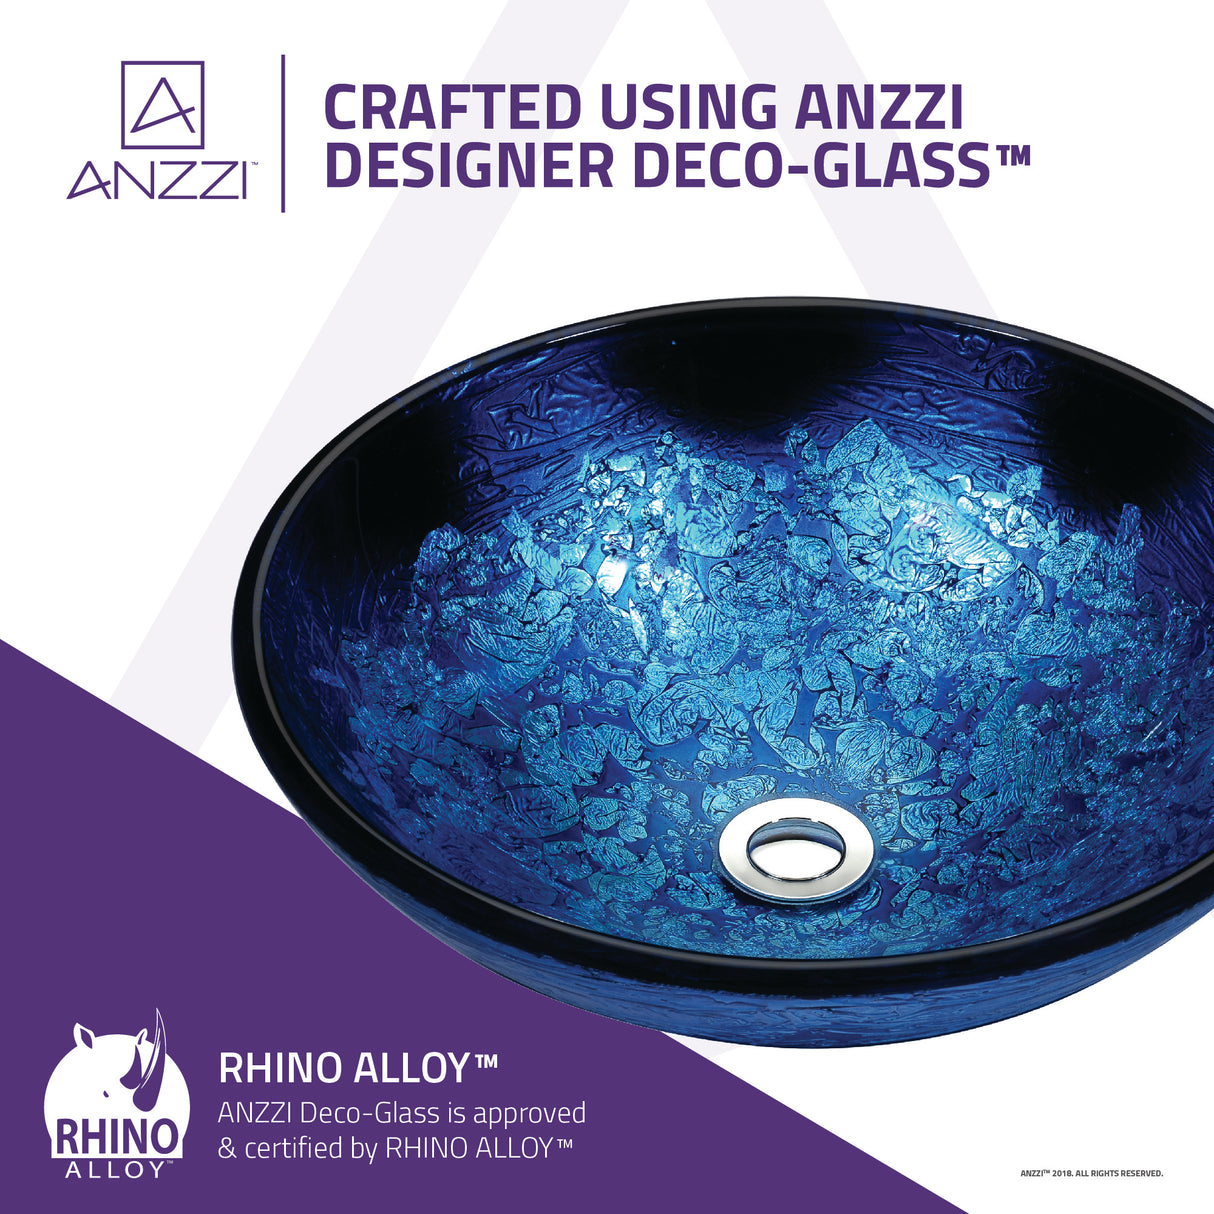 ANZZI S263 Tara Series Deco-Glass Vessel Sink in Blue Blaze